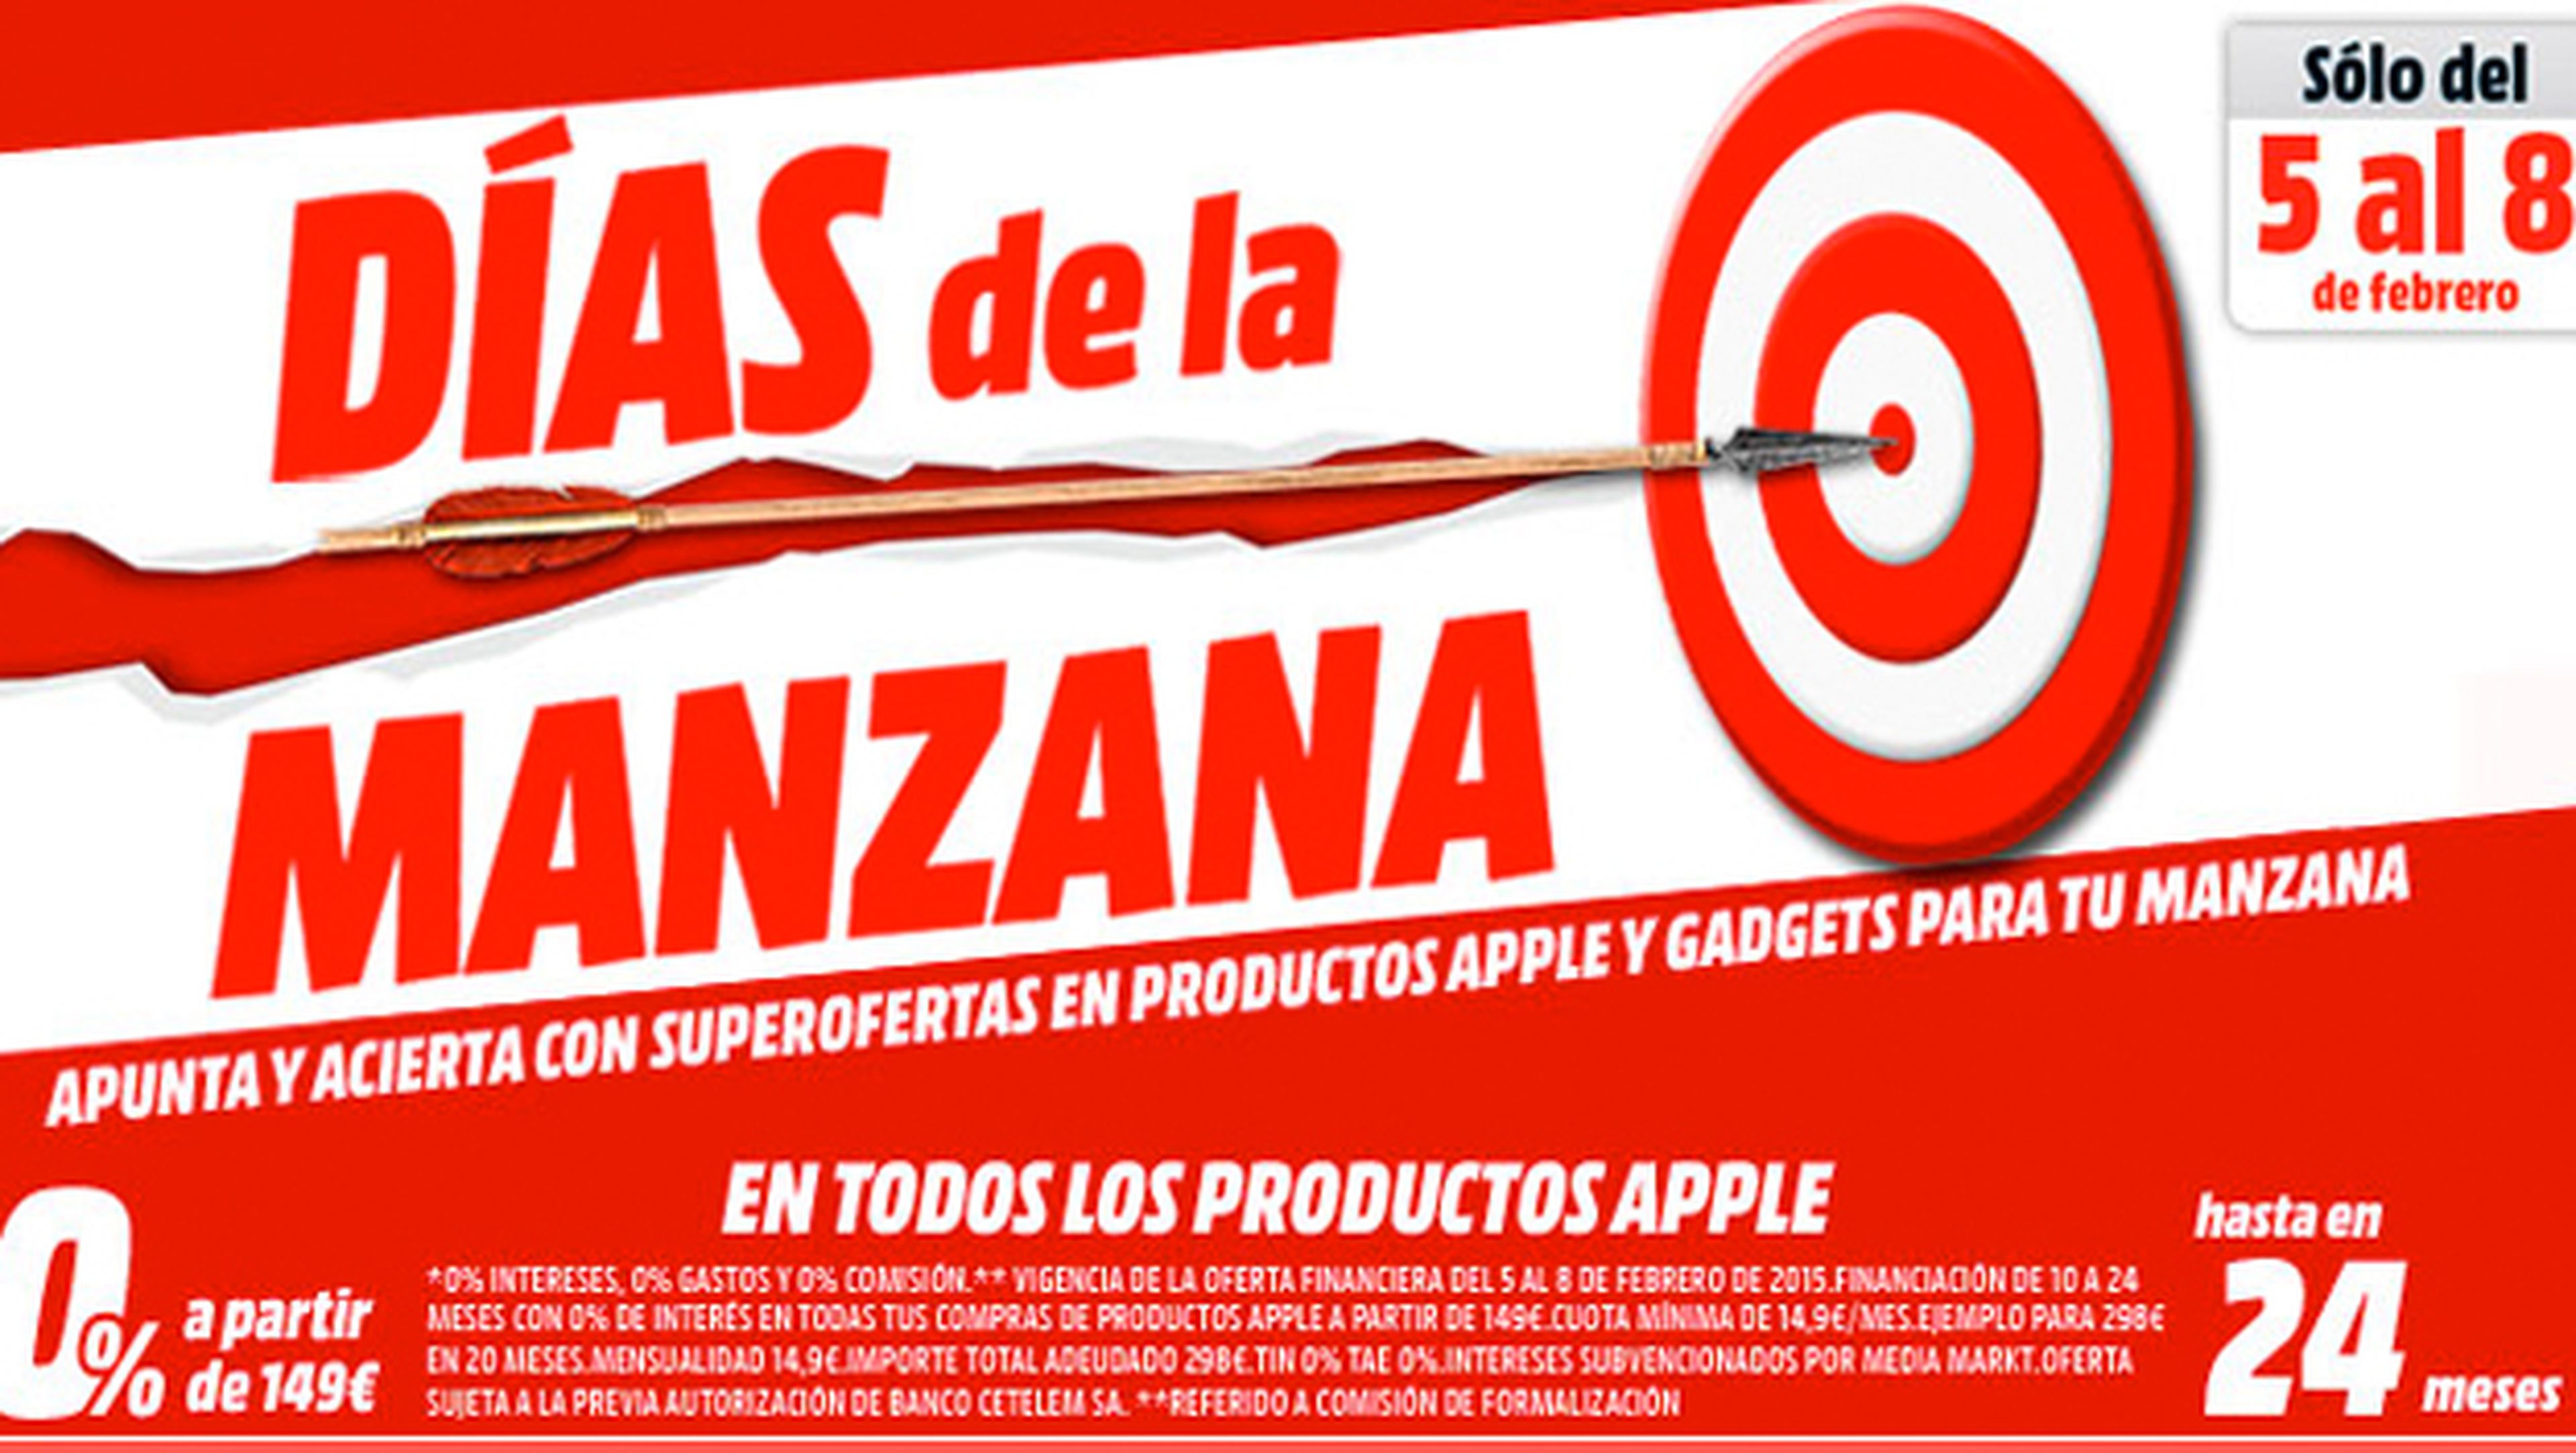 Media Markt lanza 'Días de la Manzana' para productos Apple